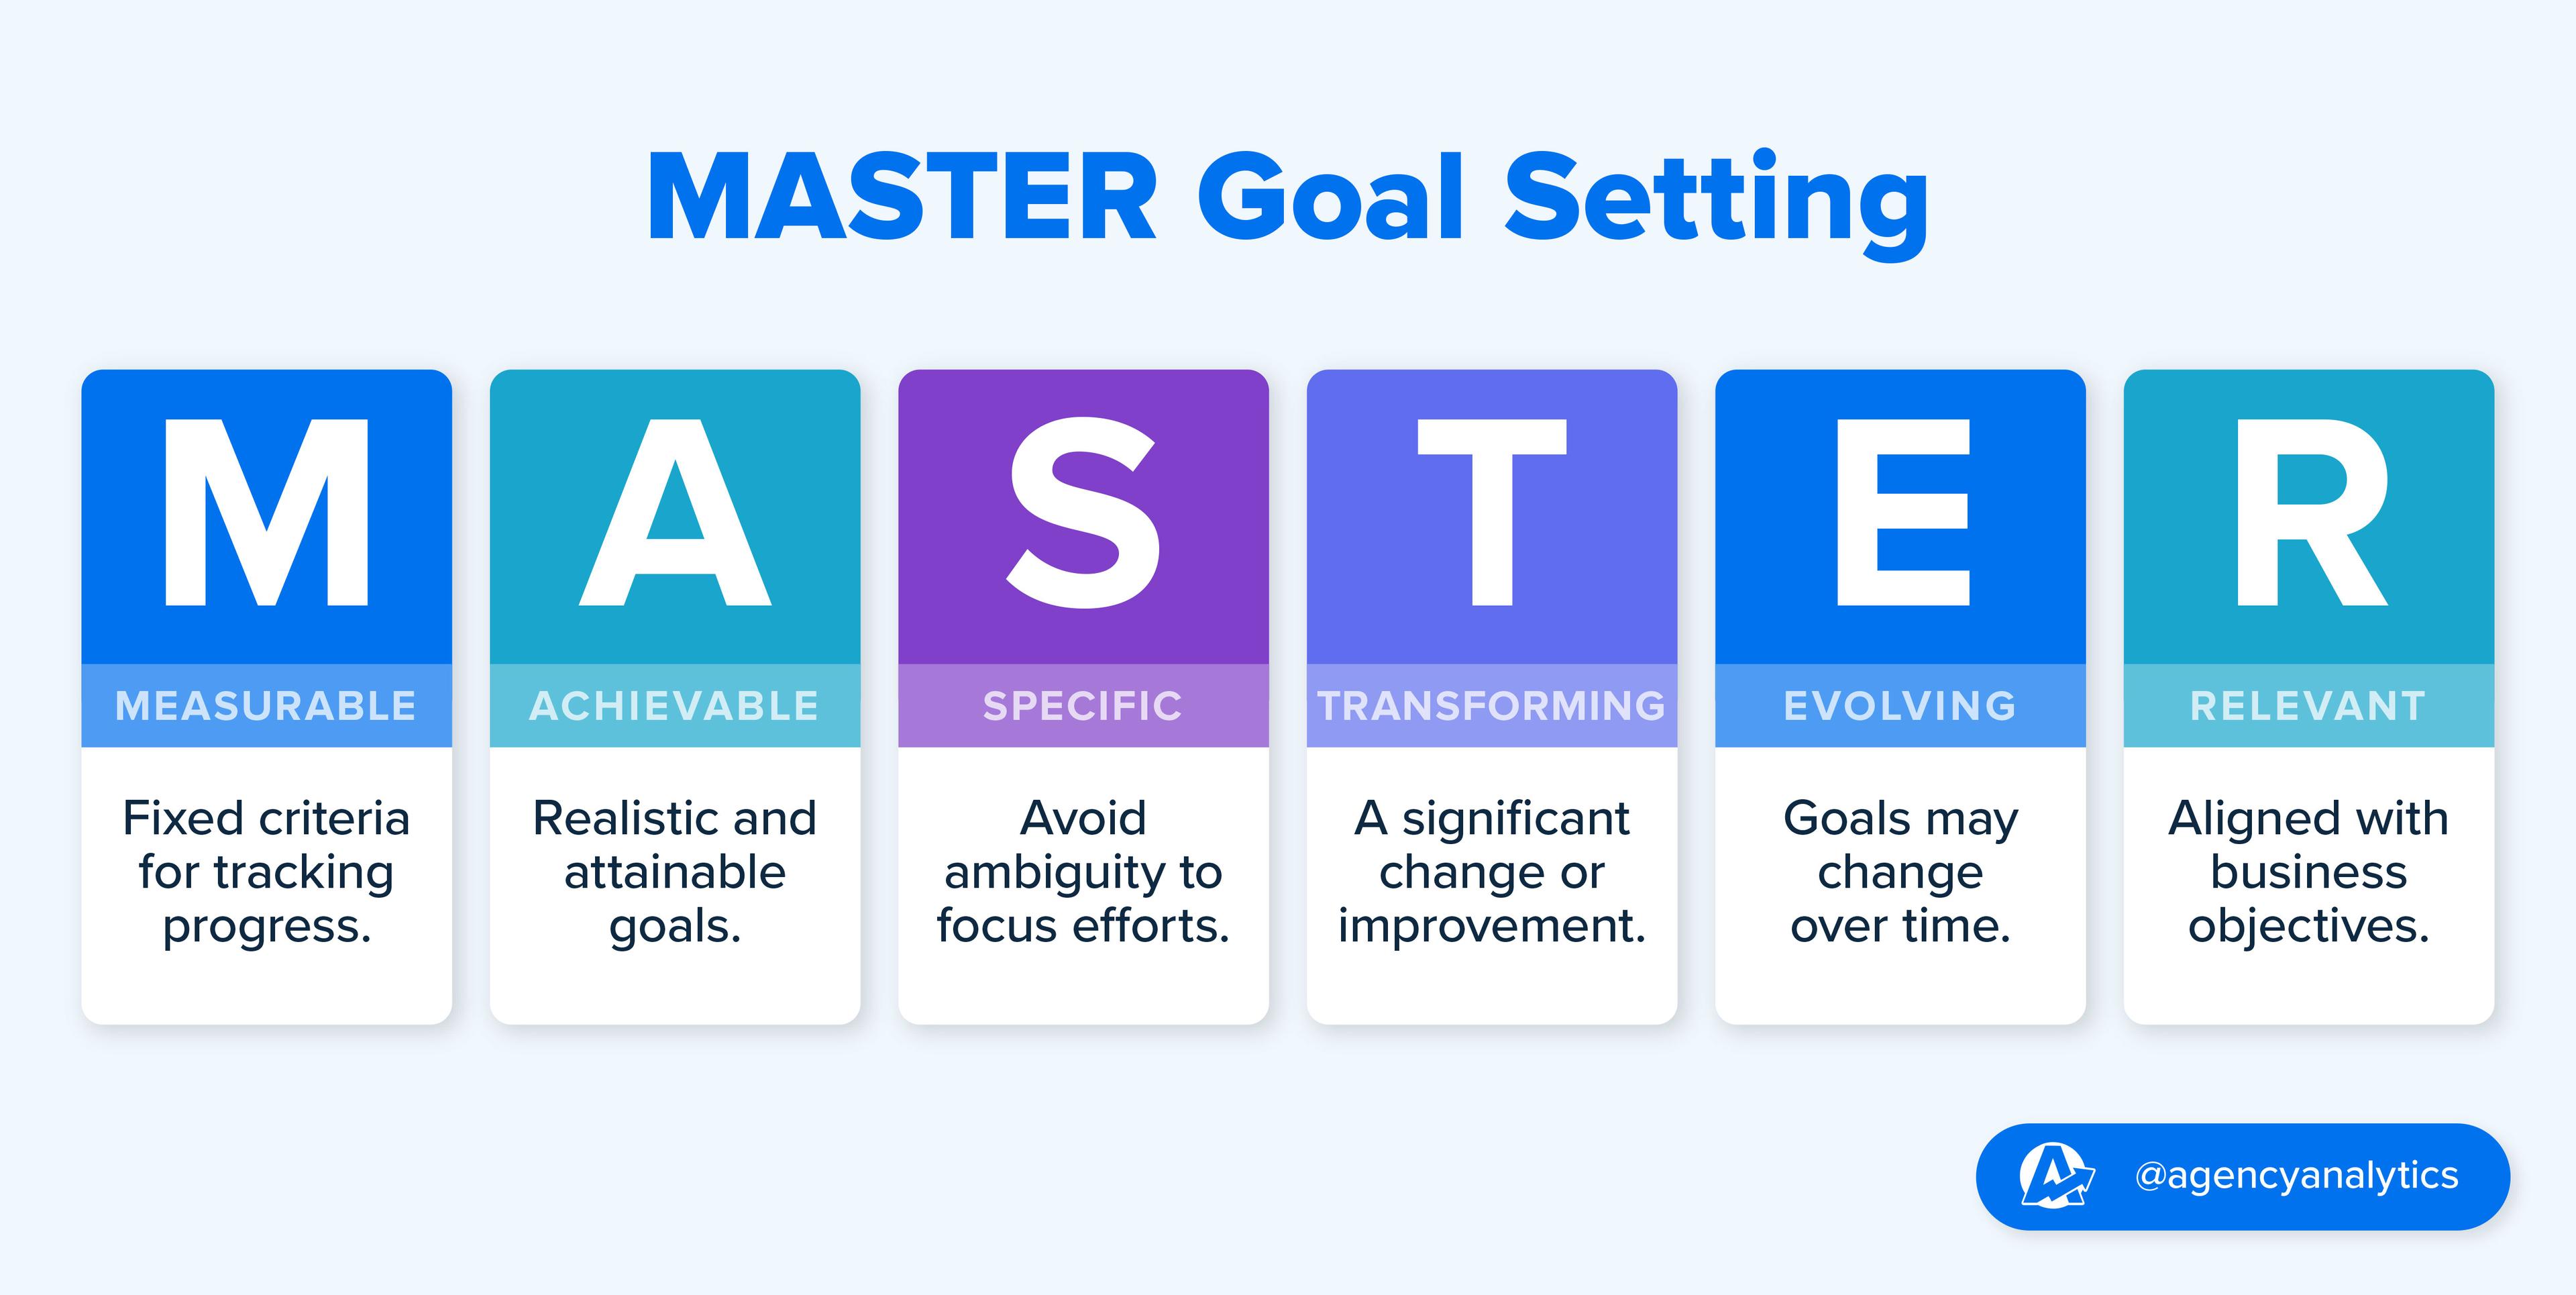 MASTER goal setting framework definition